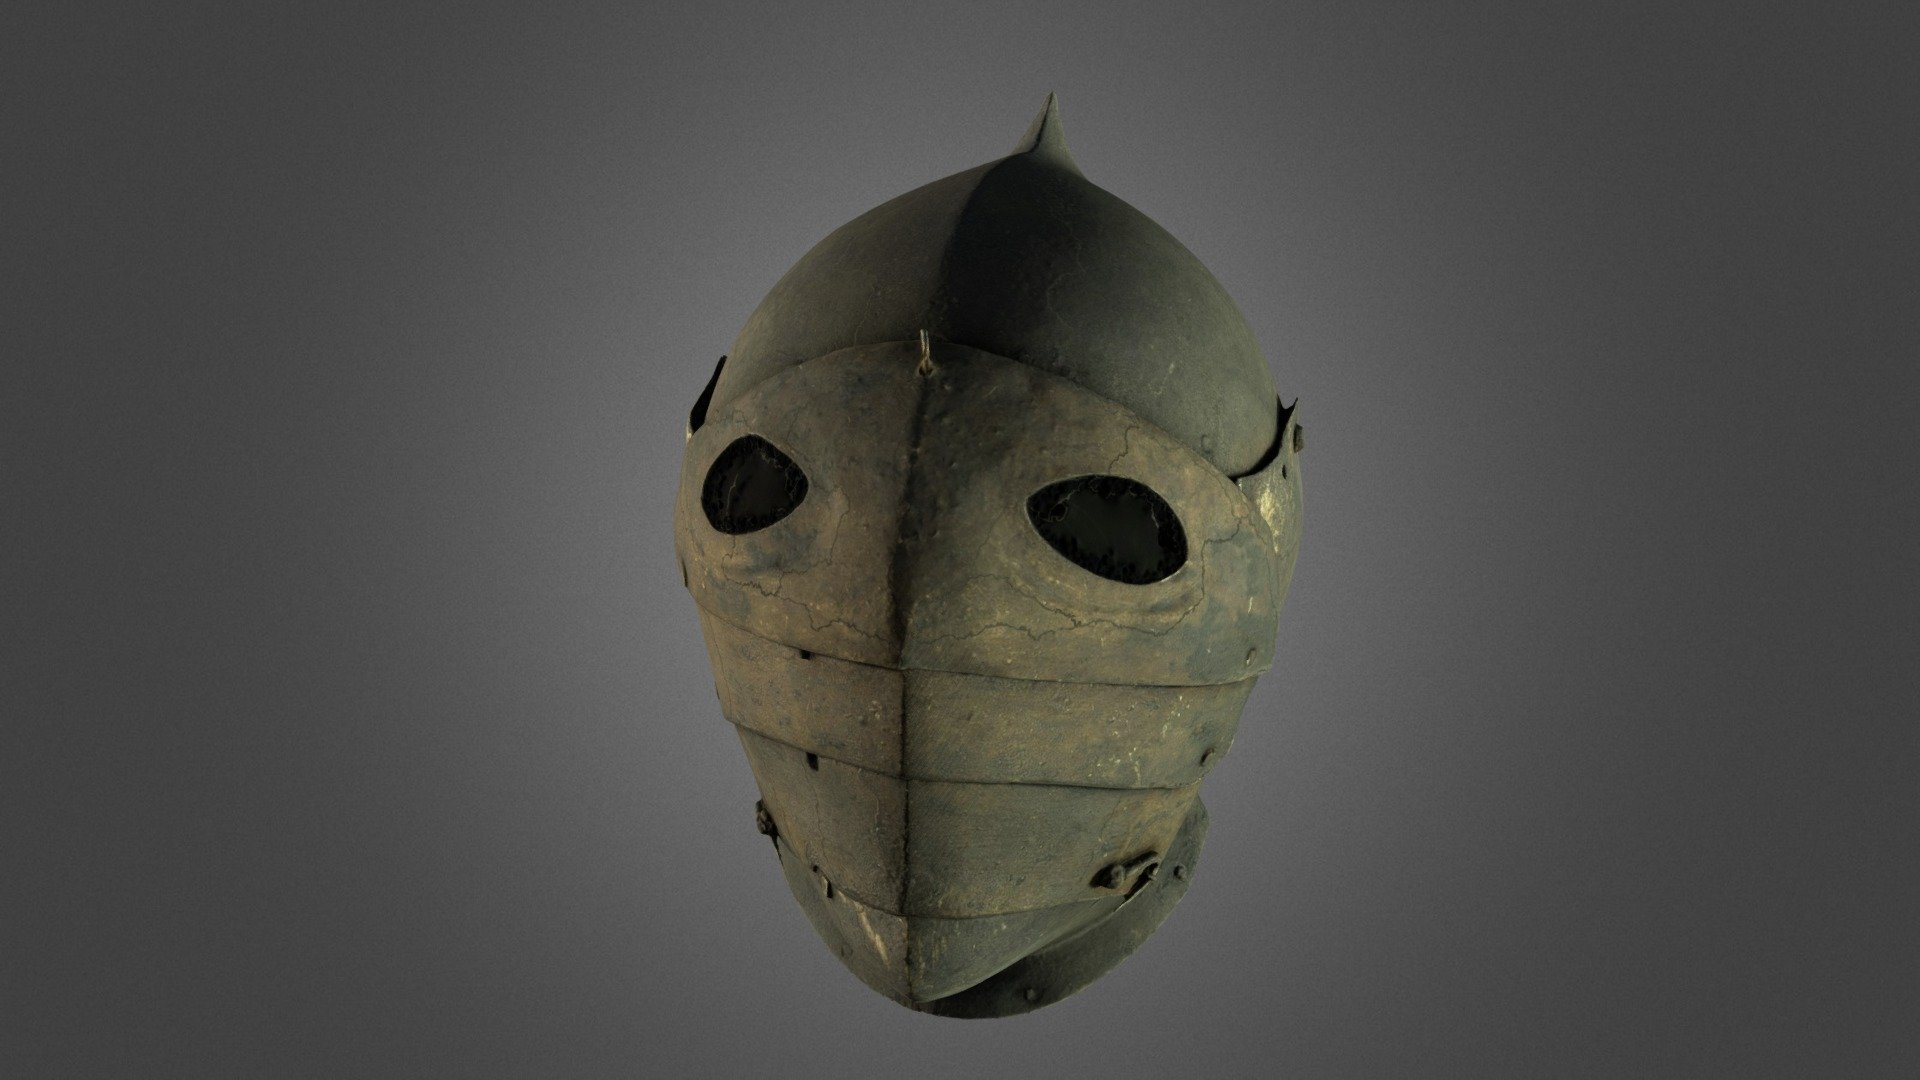 Armor helmet / jazdecka prilba - 3D model by Digitization centre of ...